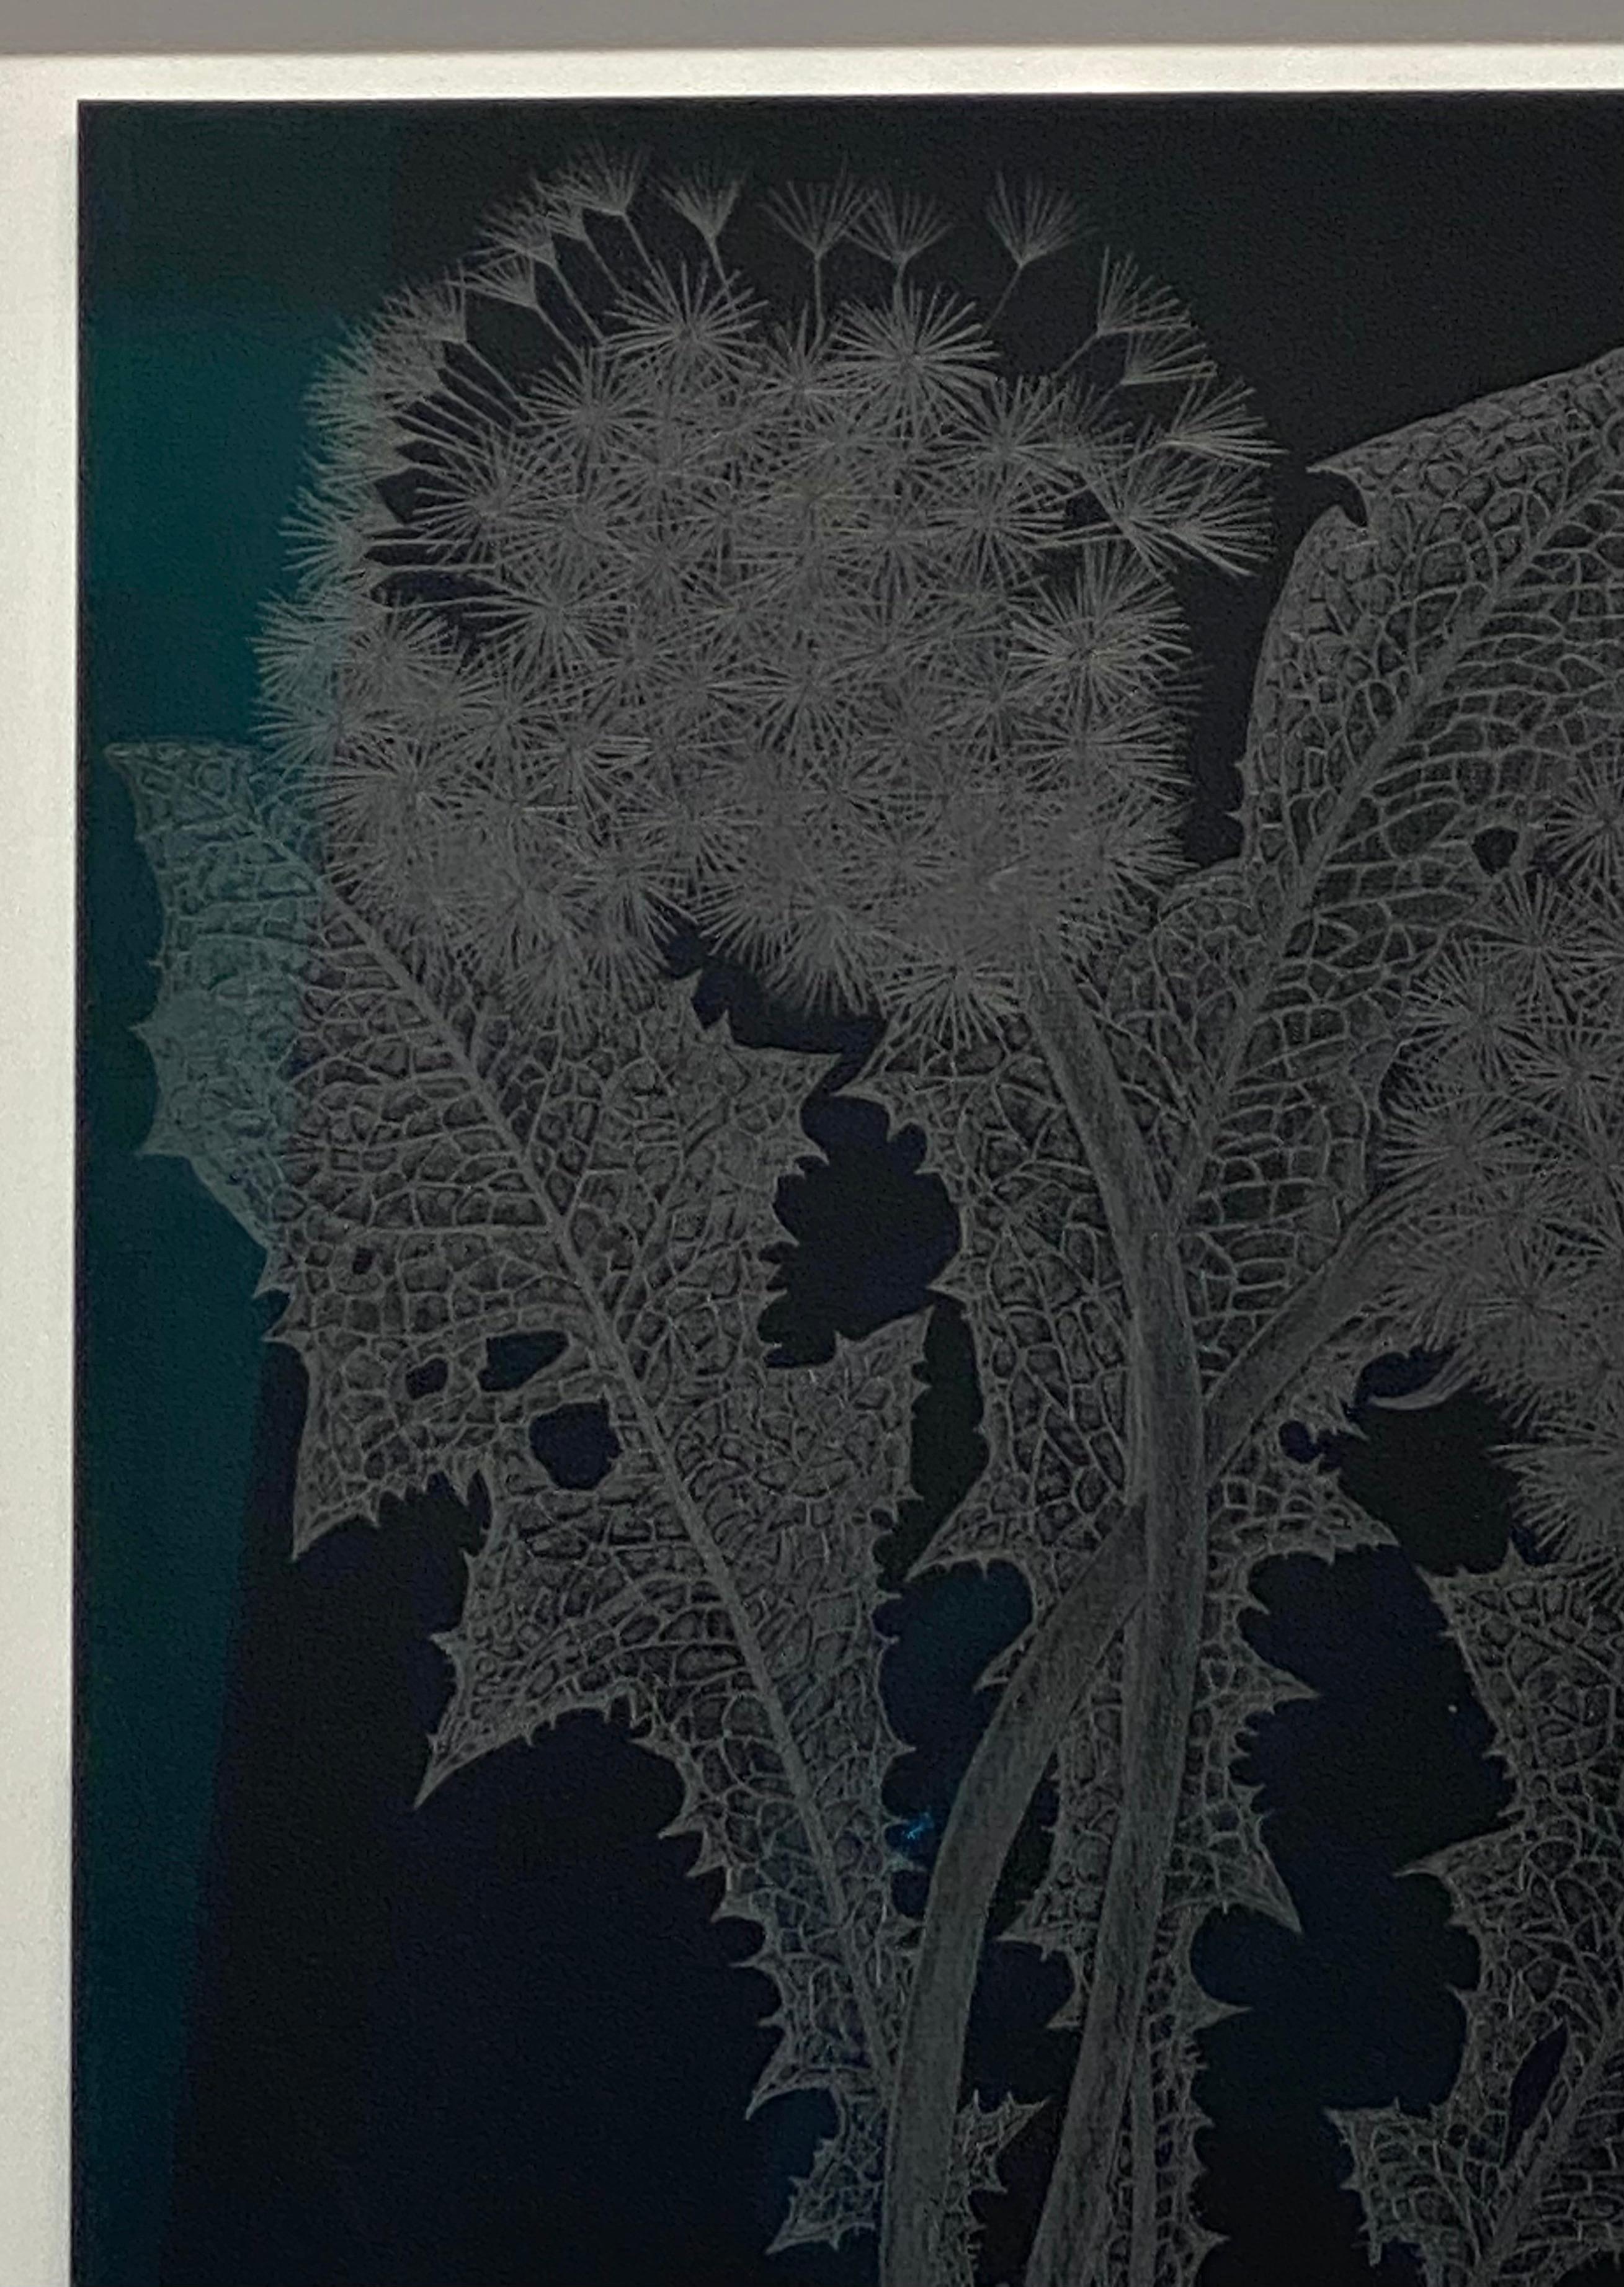 Diese zarte botanische Zeichnung in Silber wurde mit Graphit auf schwarzem Papier angefertigt. Die Erforschung der Vergänglichkeit und der Zerbrechlichkeit des Löwenzahns sowie die Textur und Bewegung der Pflanze stehen im Mittelpunkt dieser Serie